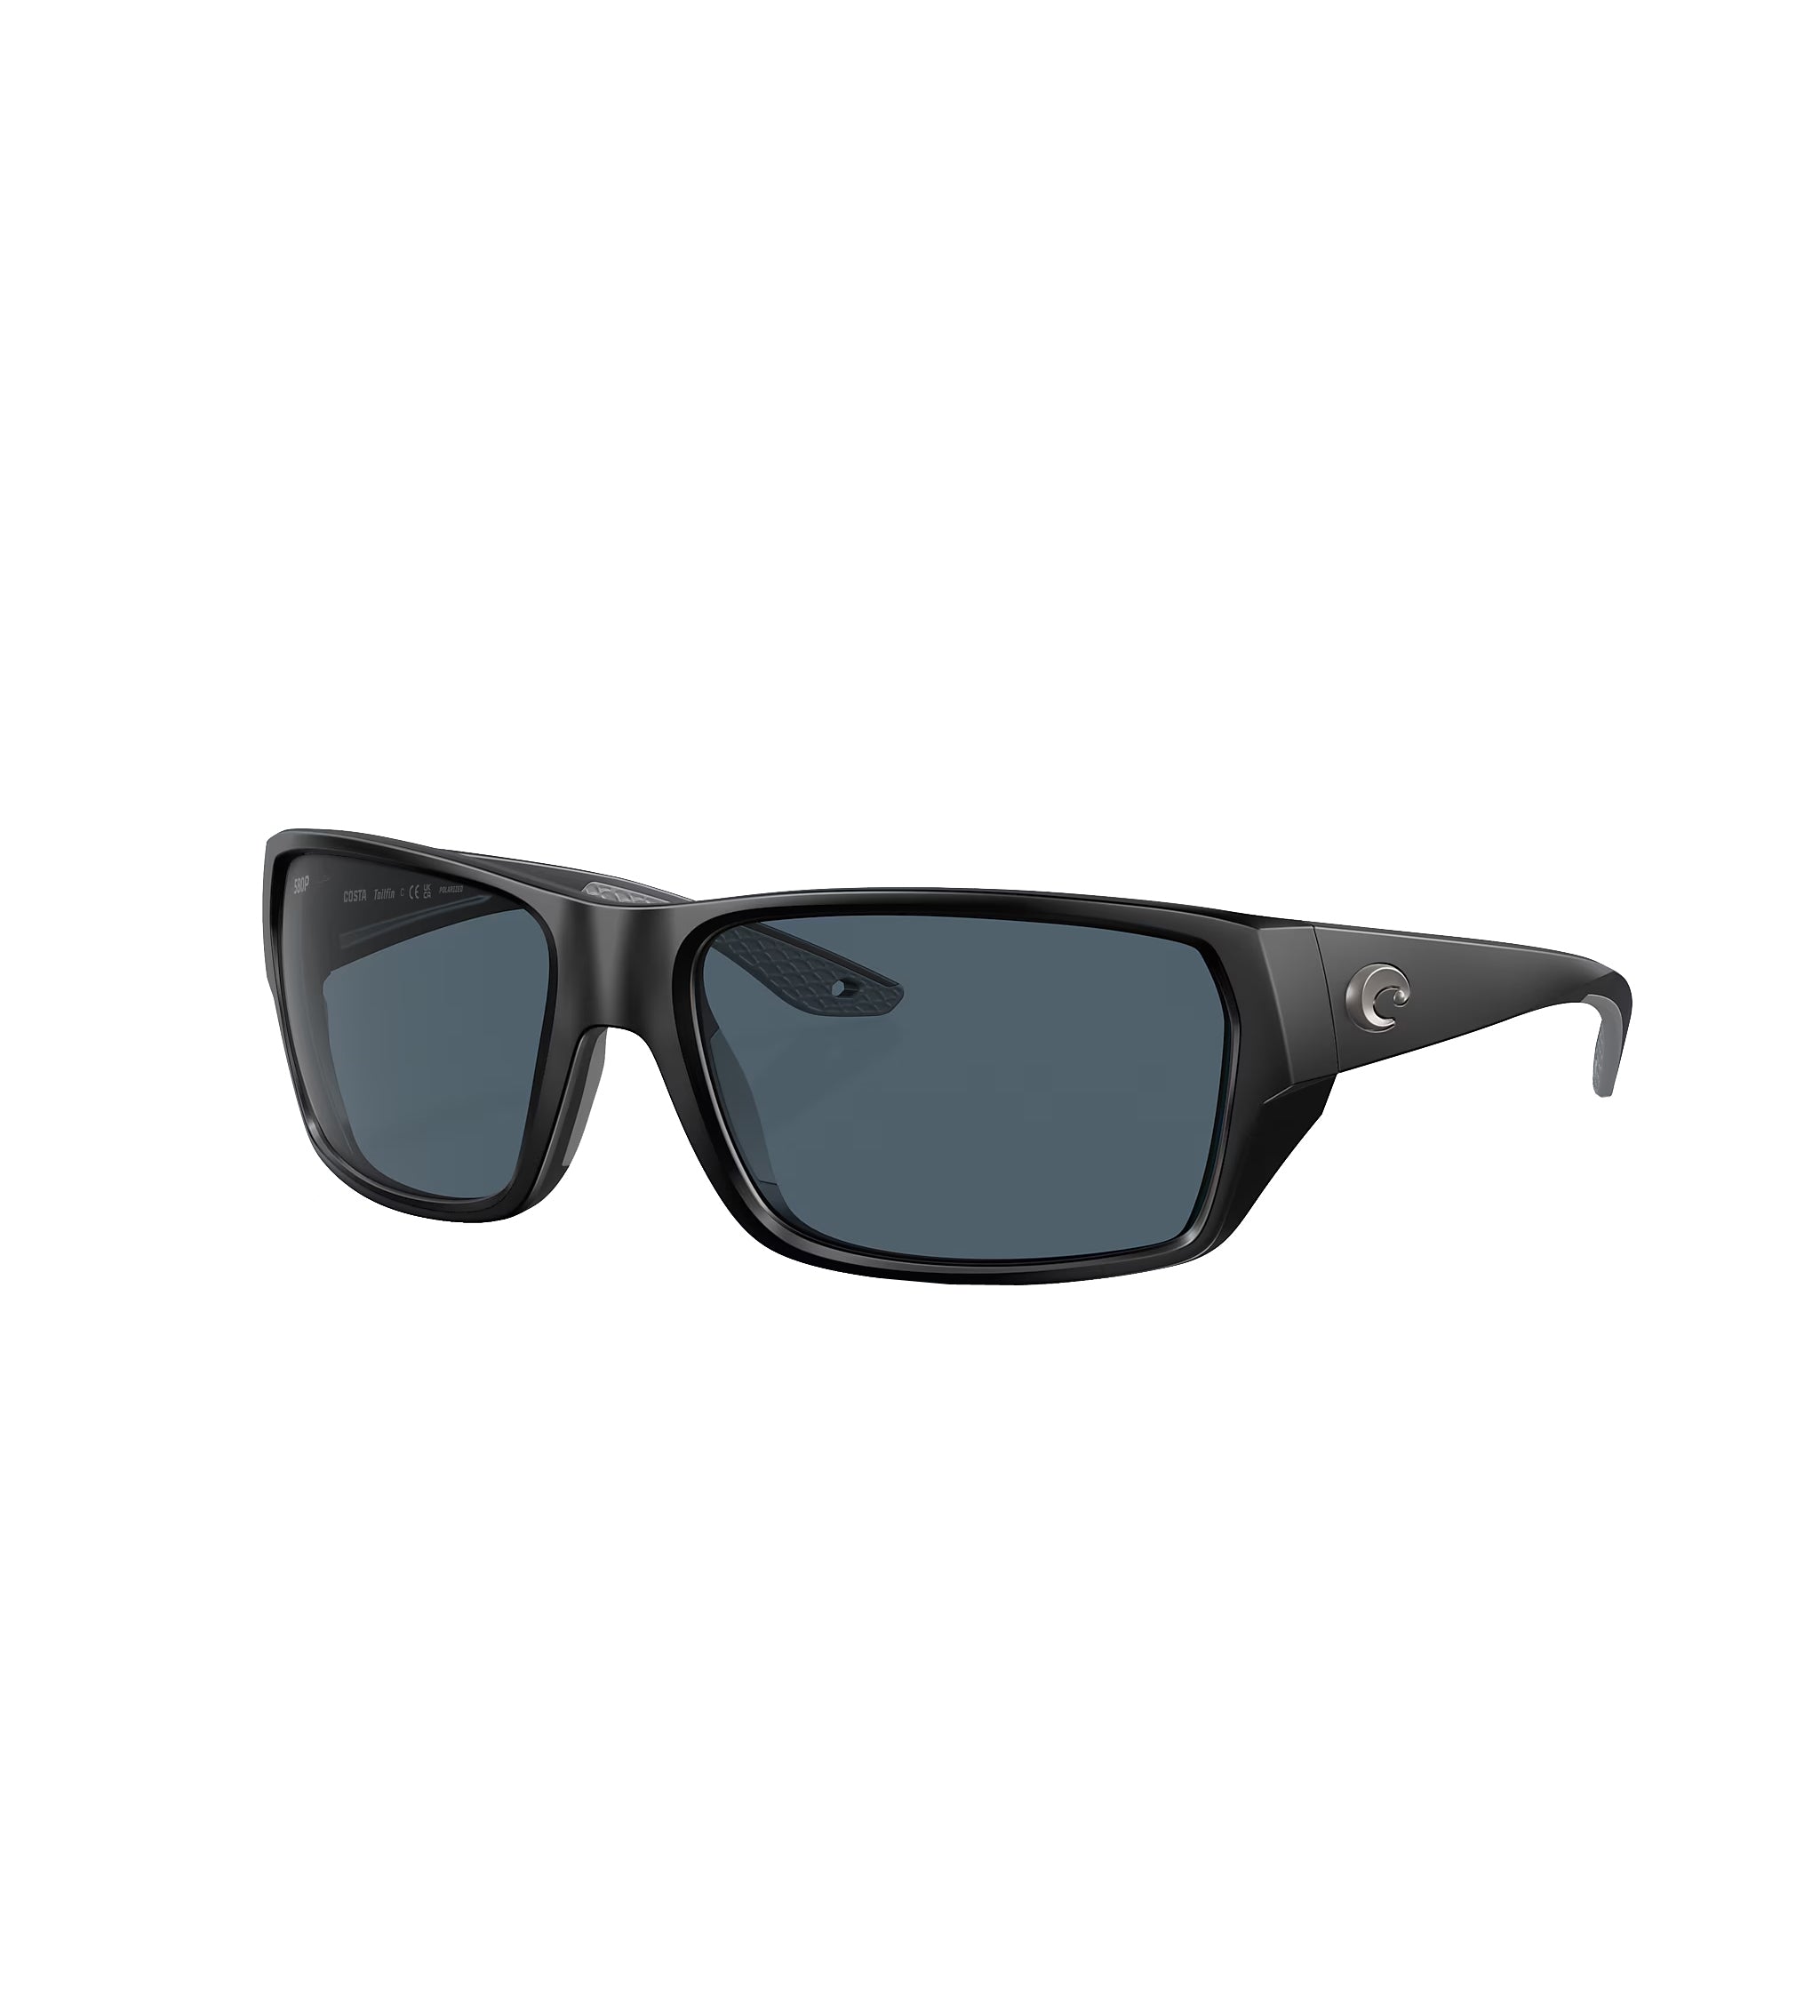 Costa Del Mar Tailfin Sunglasses MatteBlack Gray 580G